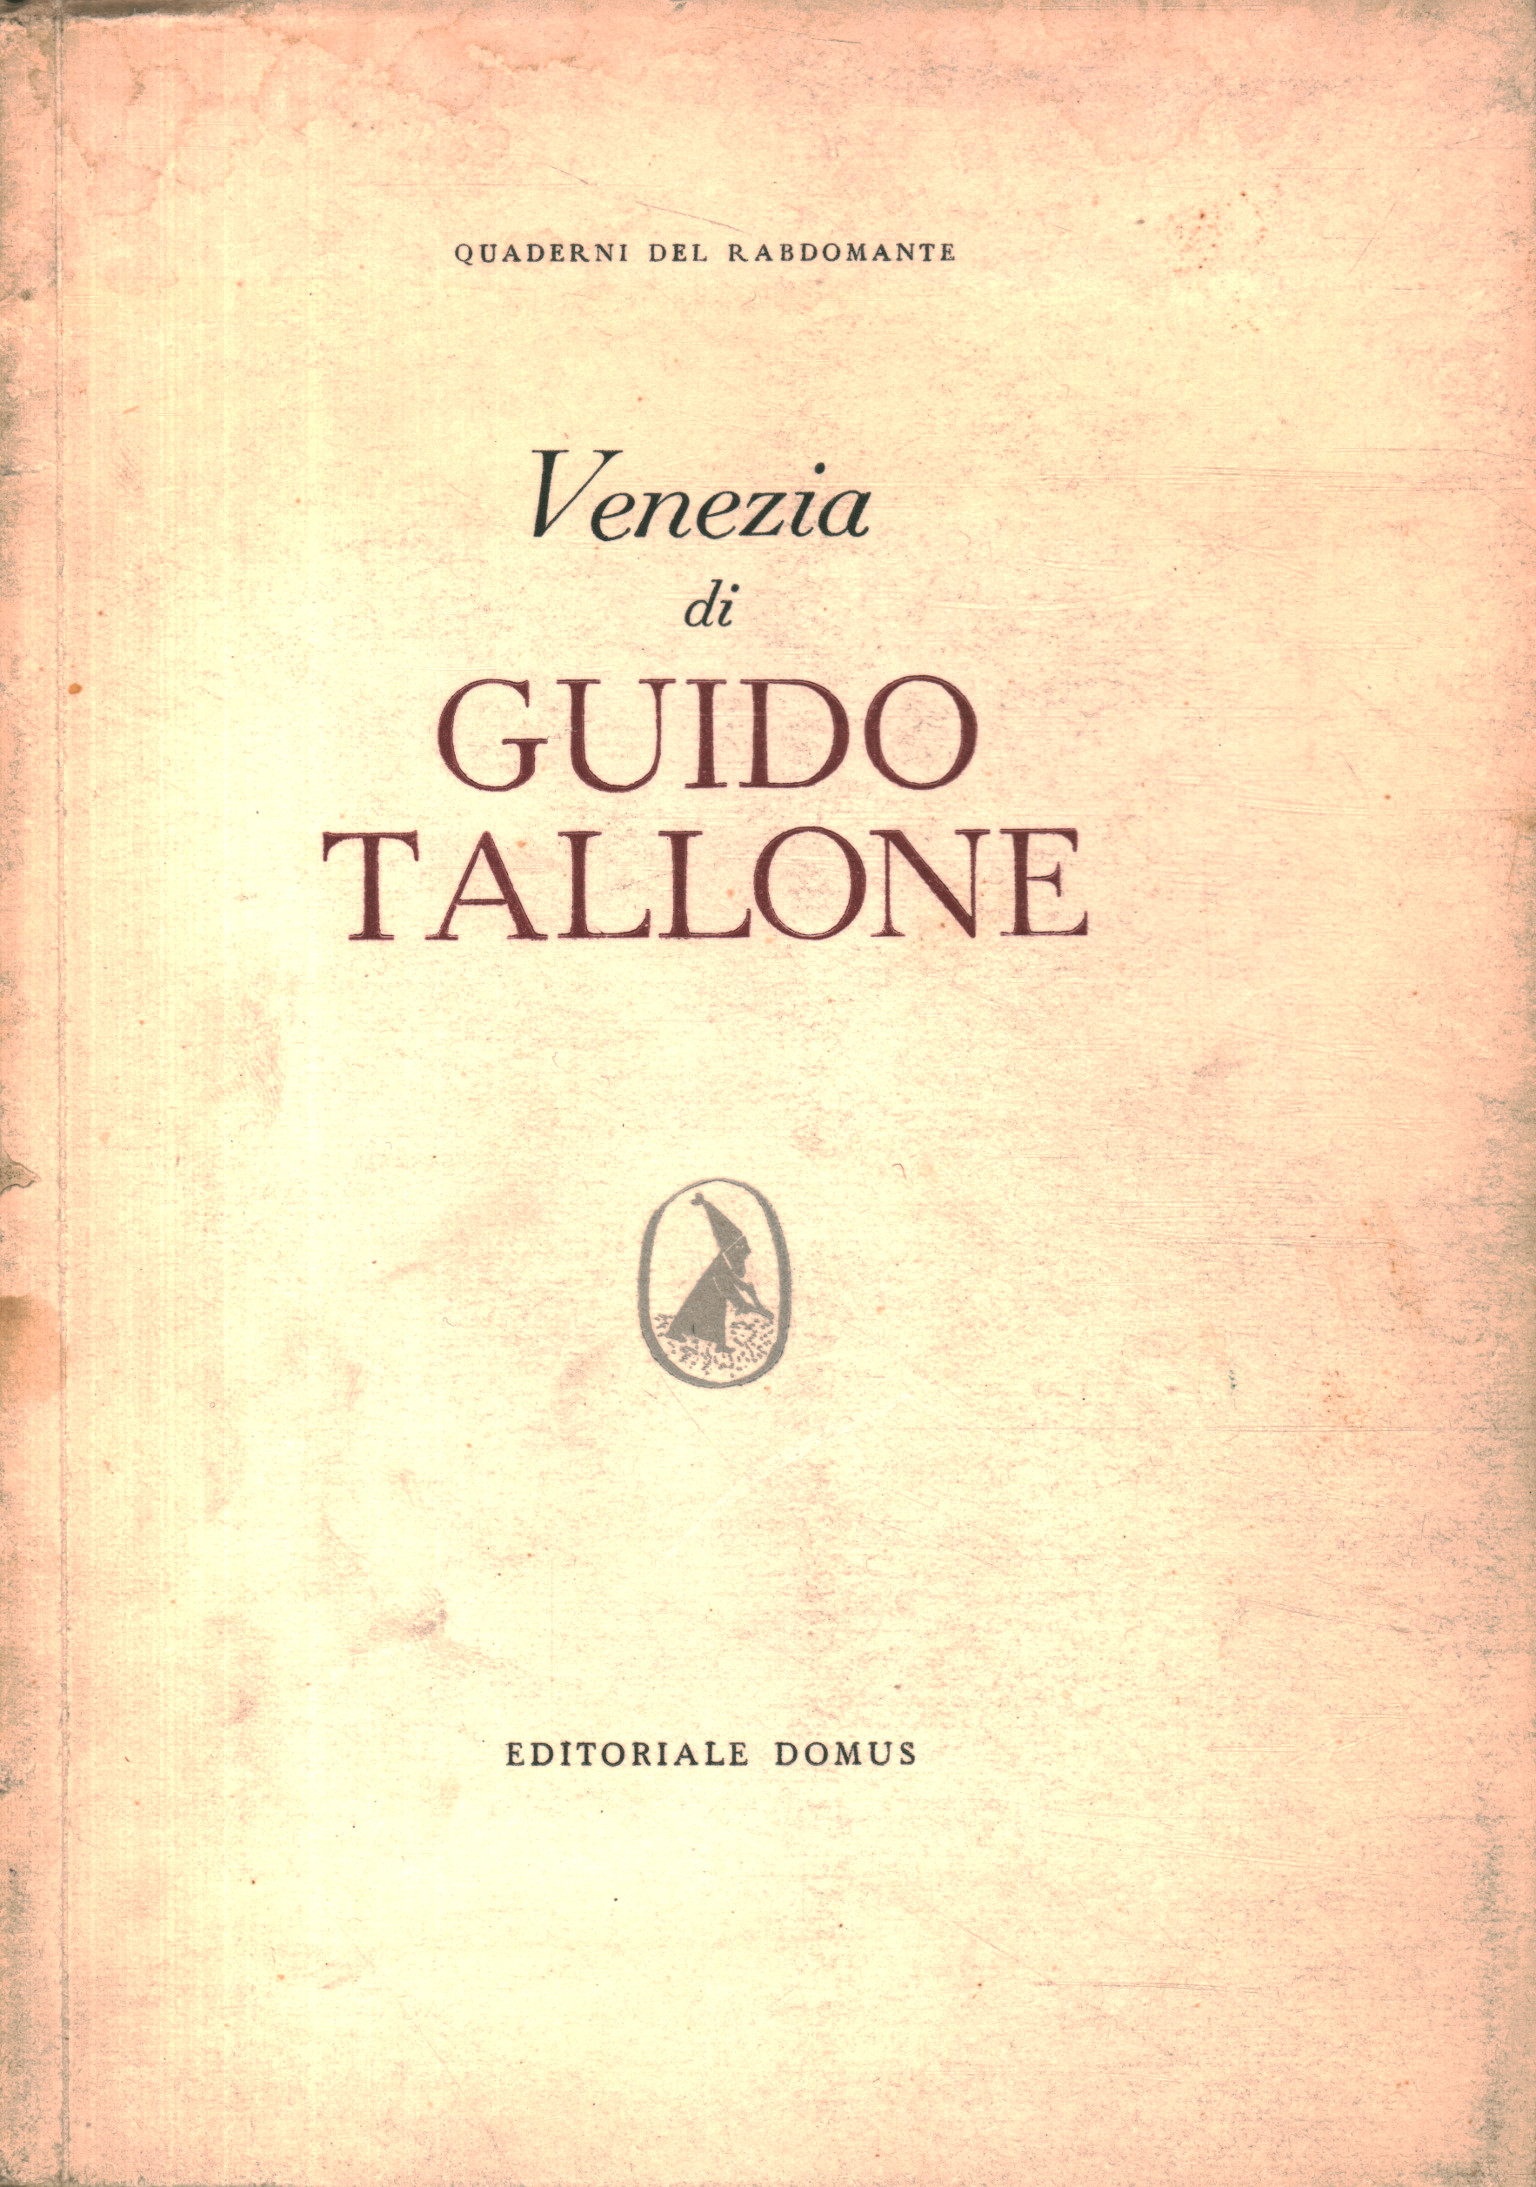 Venedig von Guido Tallone